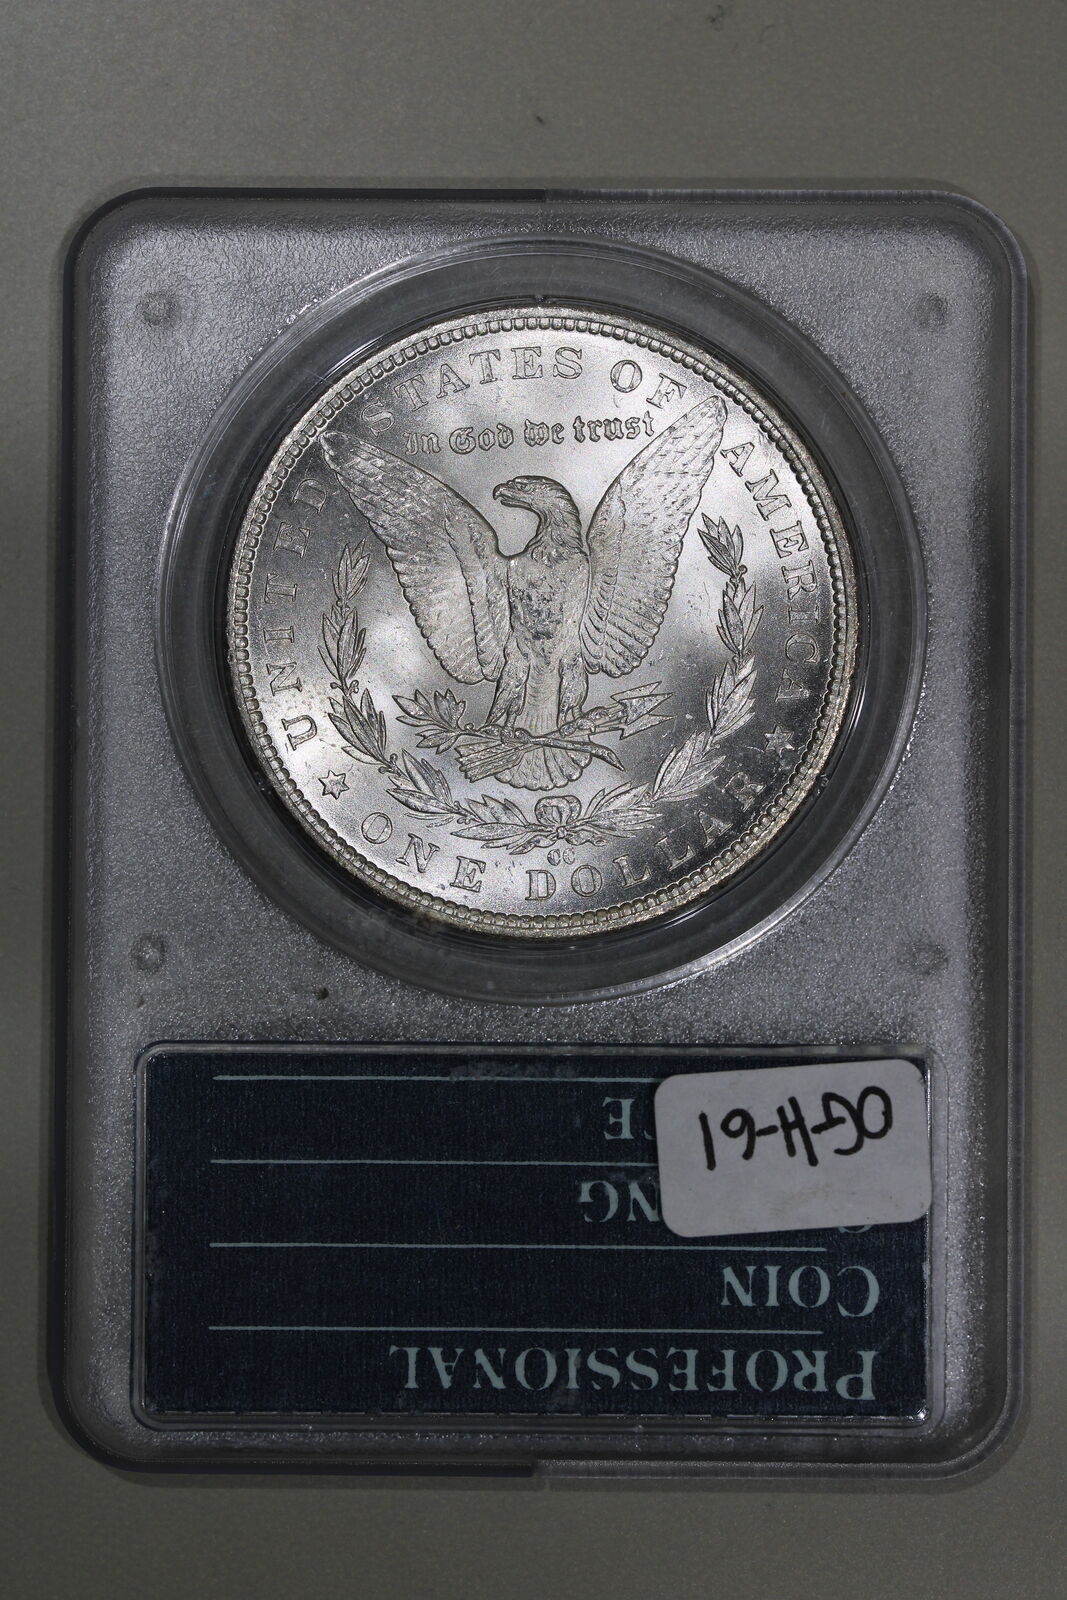 1884-CC (MS63) Rattler Morgan Silver Dollar Carson City $1 PCGS Graded Coin